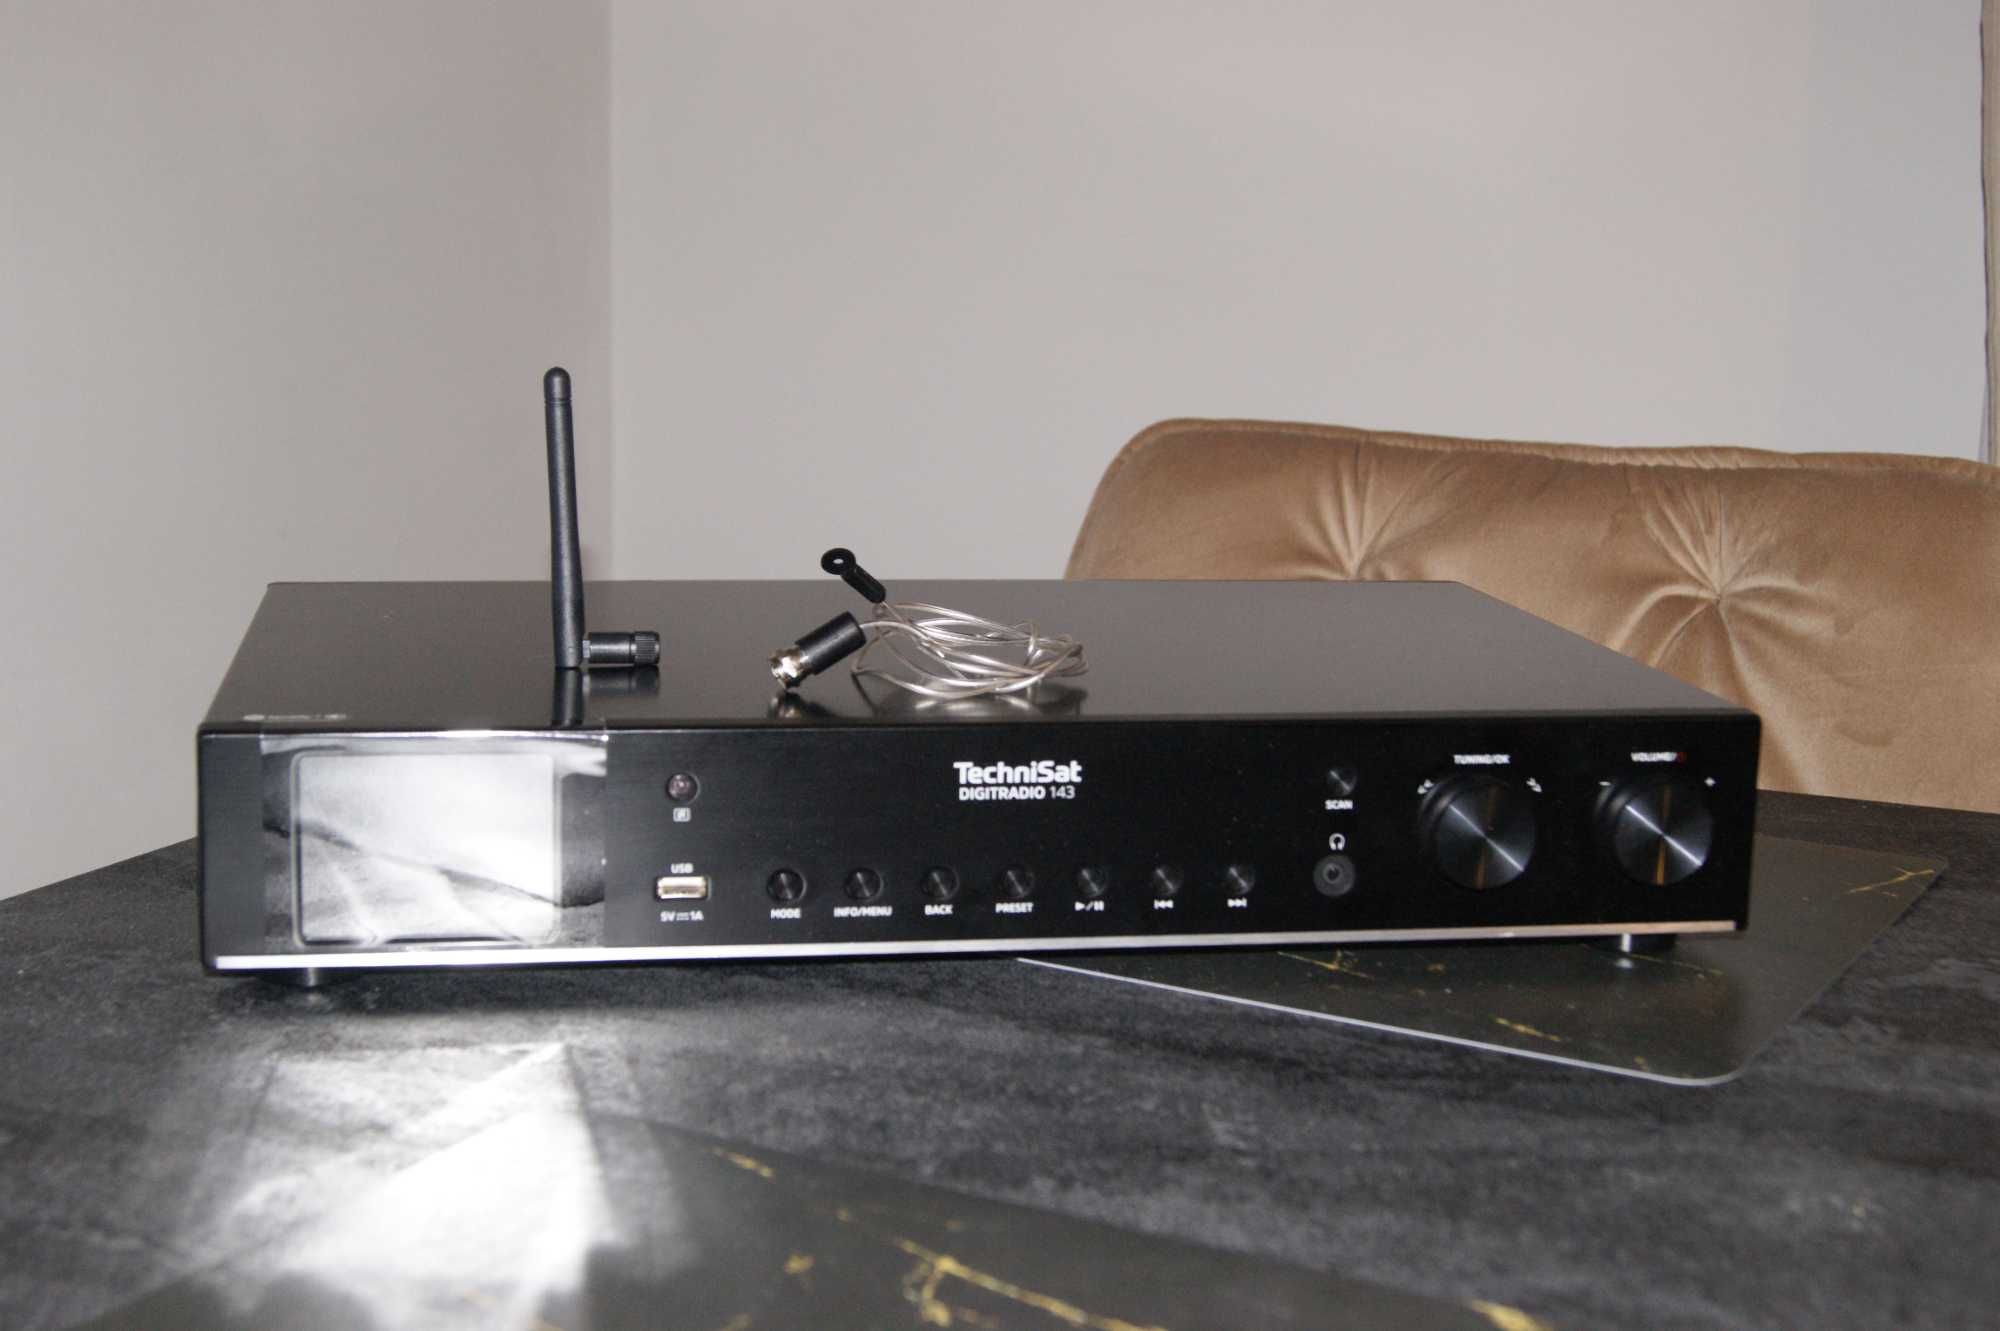 Radioodtwarzacz Digitradio 143 V3 czarne NOWE.